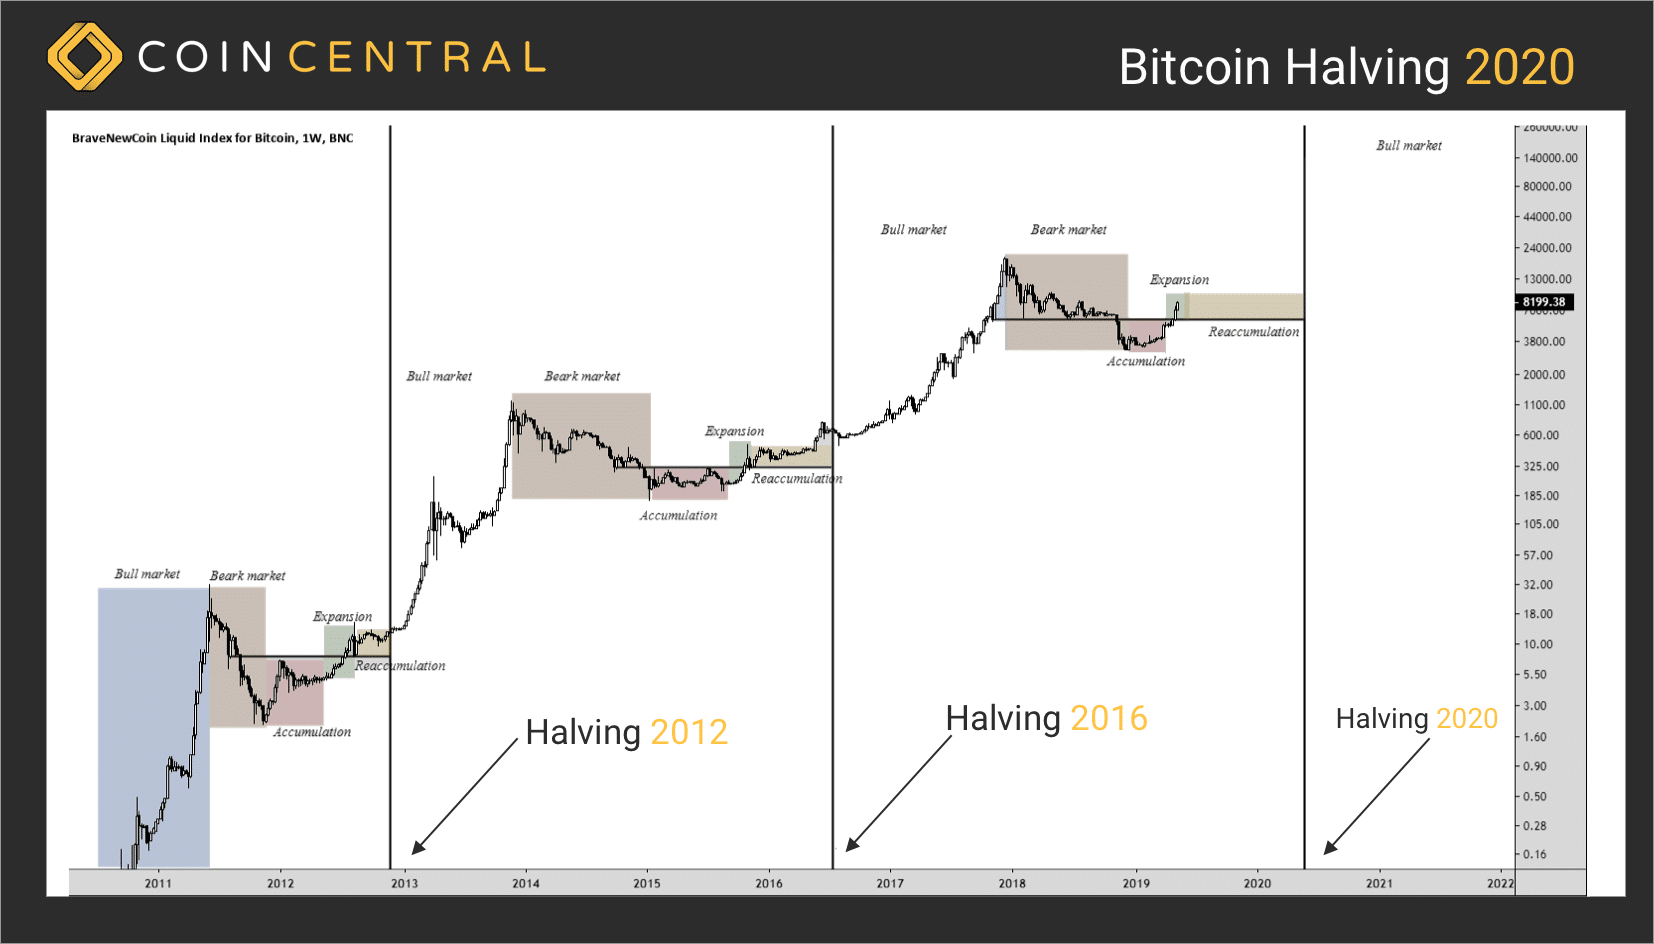 Vil der være et prisspring efter bitcoin-halveringen i 2020? Det vil tiden vise.